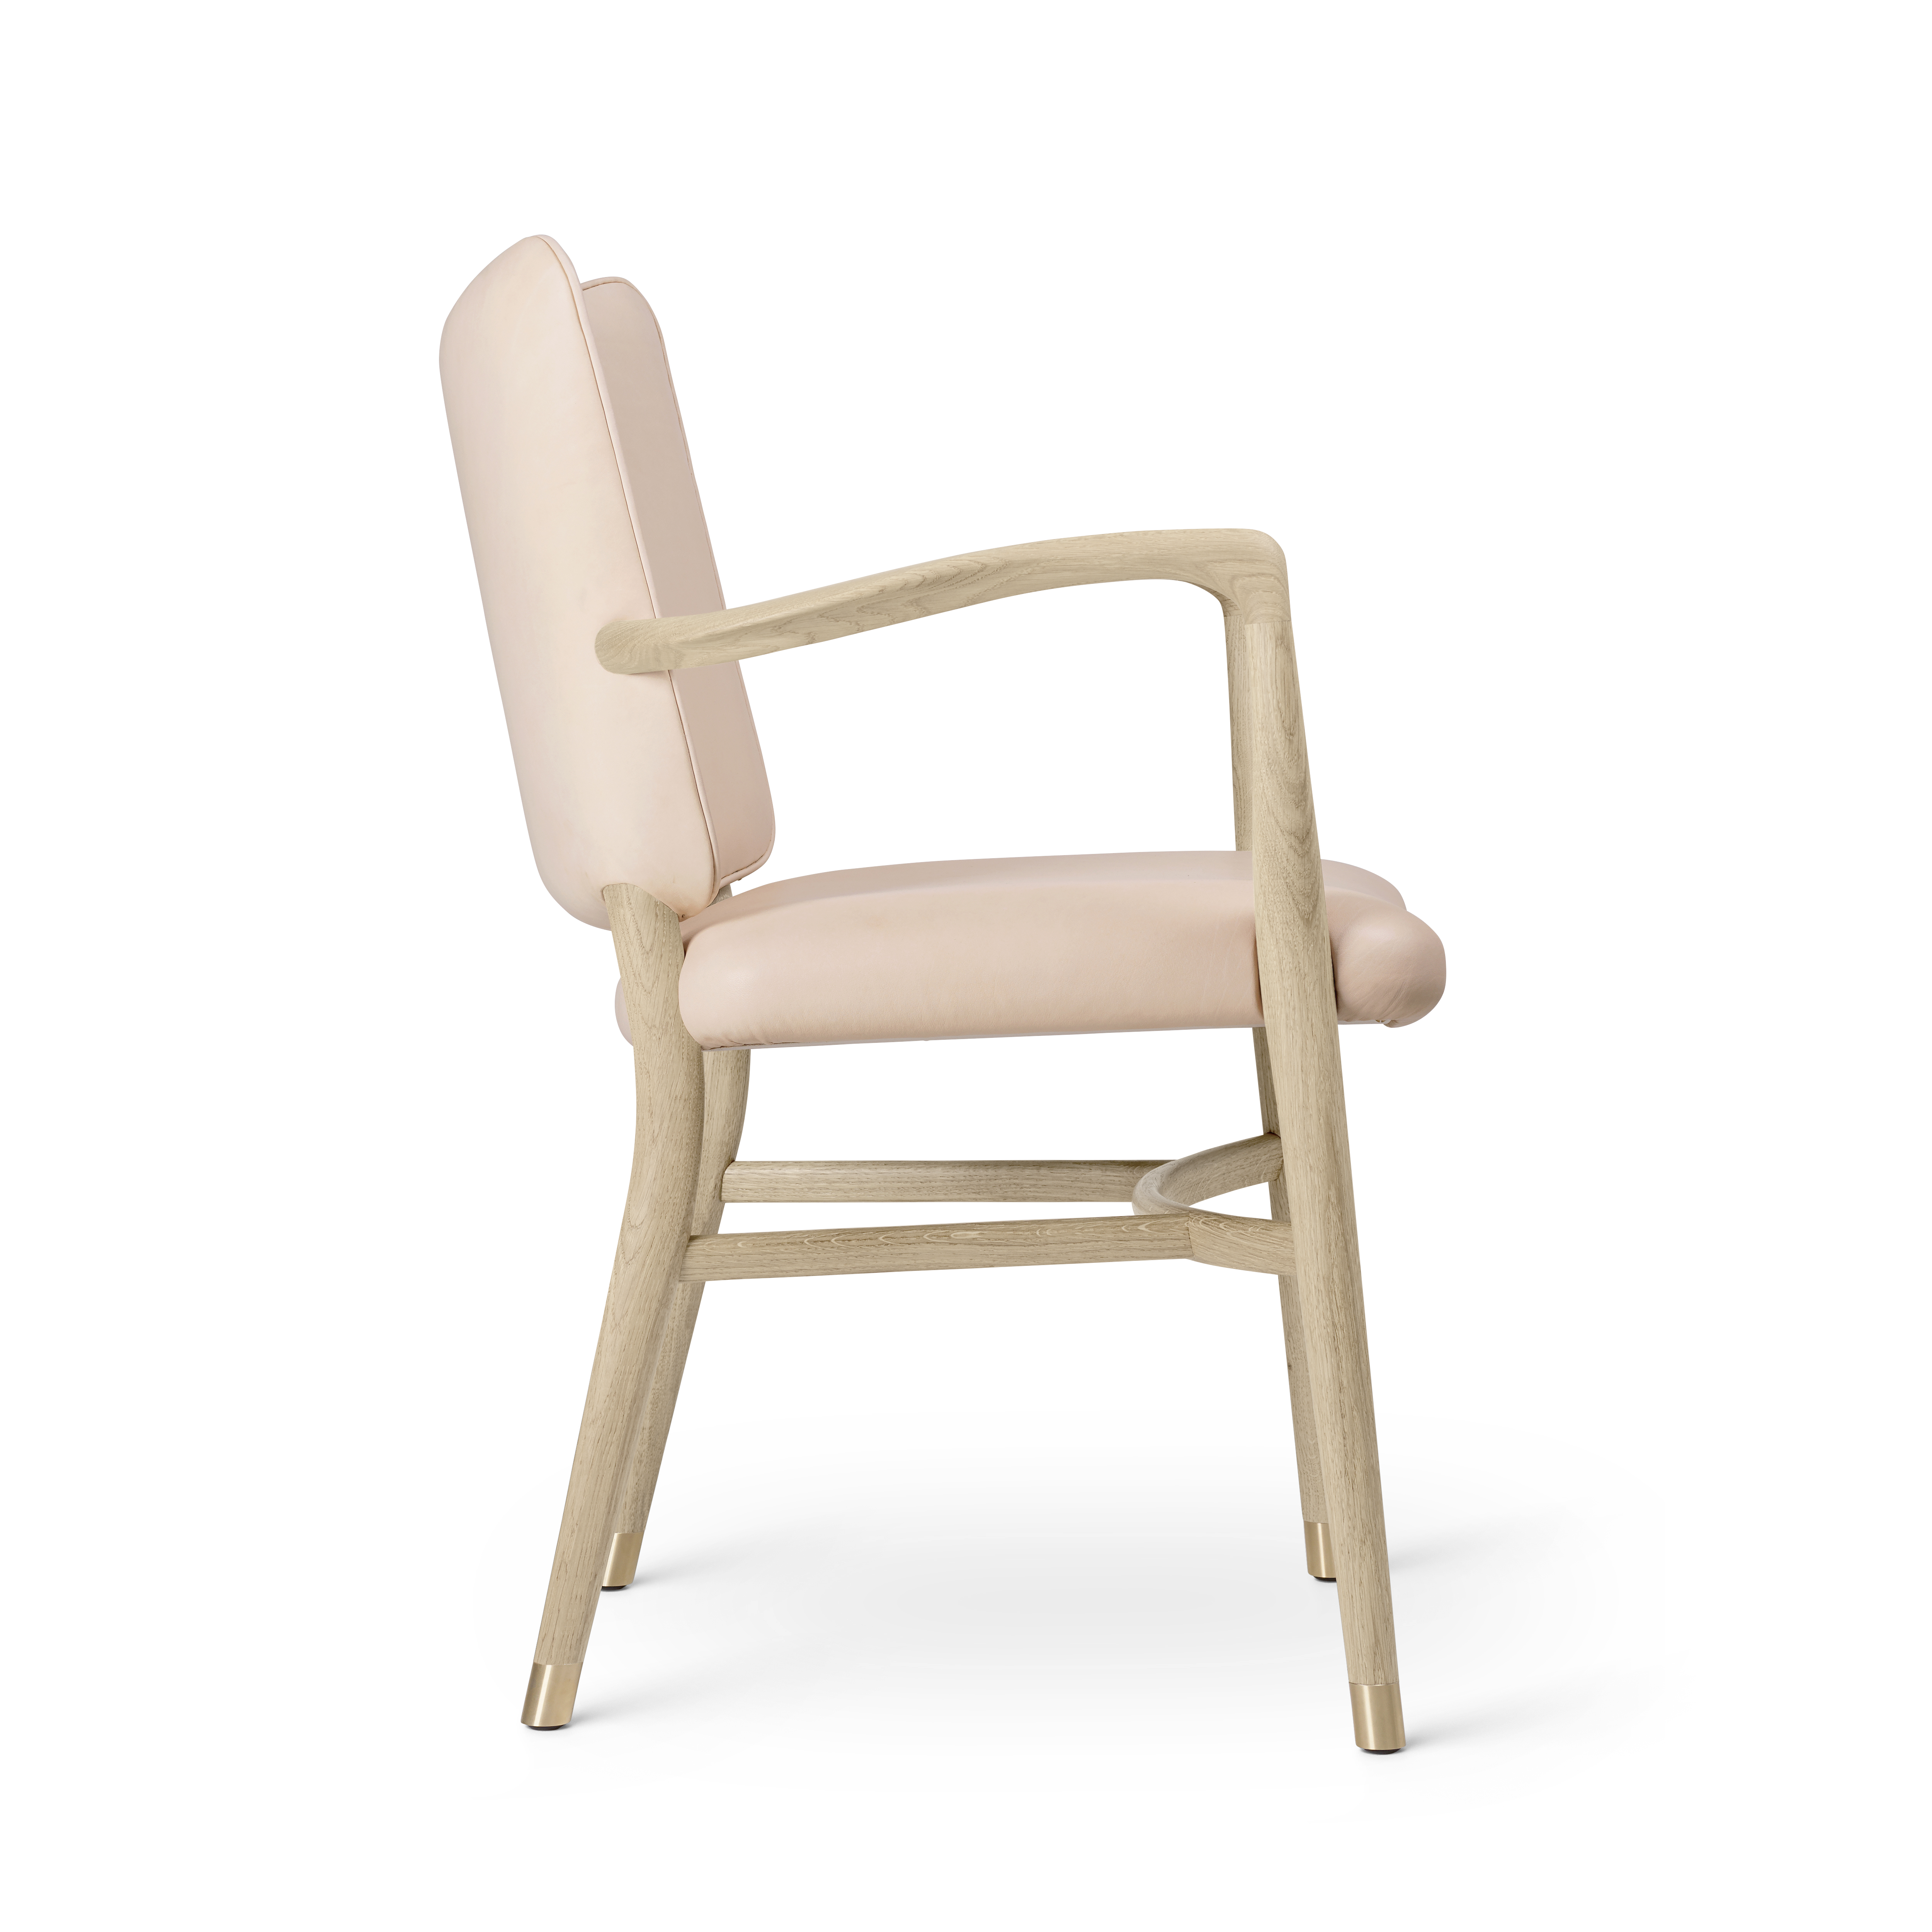 Buy VLA61 | Monarch Chair designed by Vilhelm Lauritzen | Carl Hansen & Søn